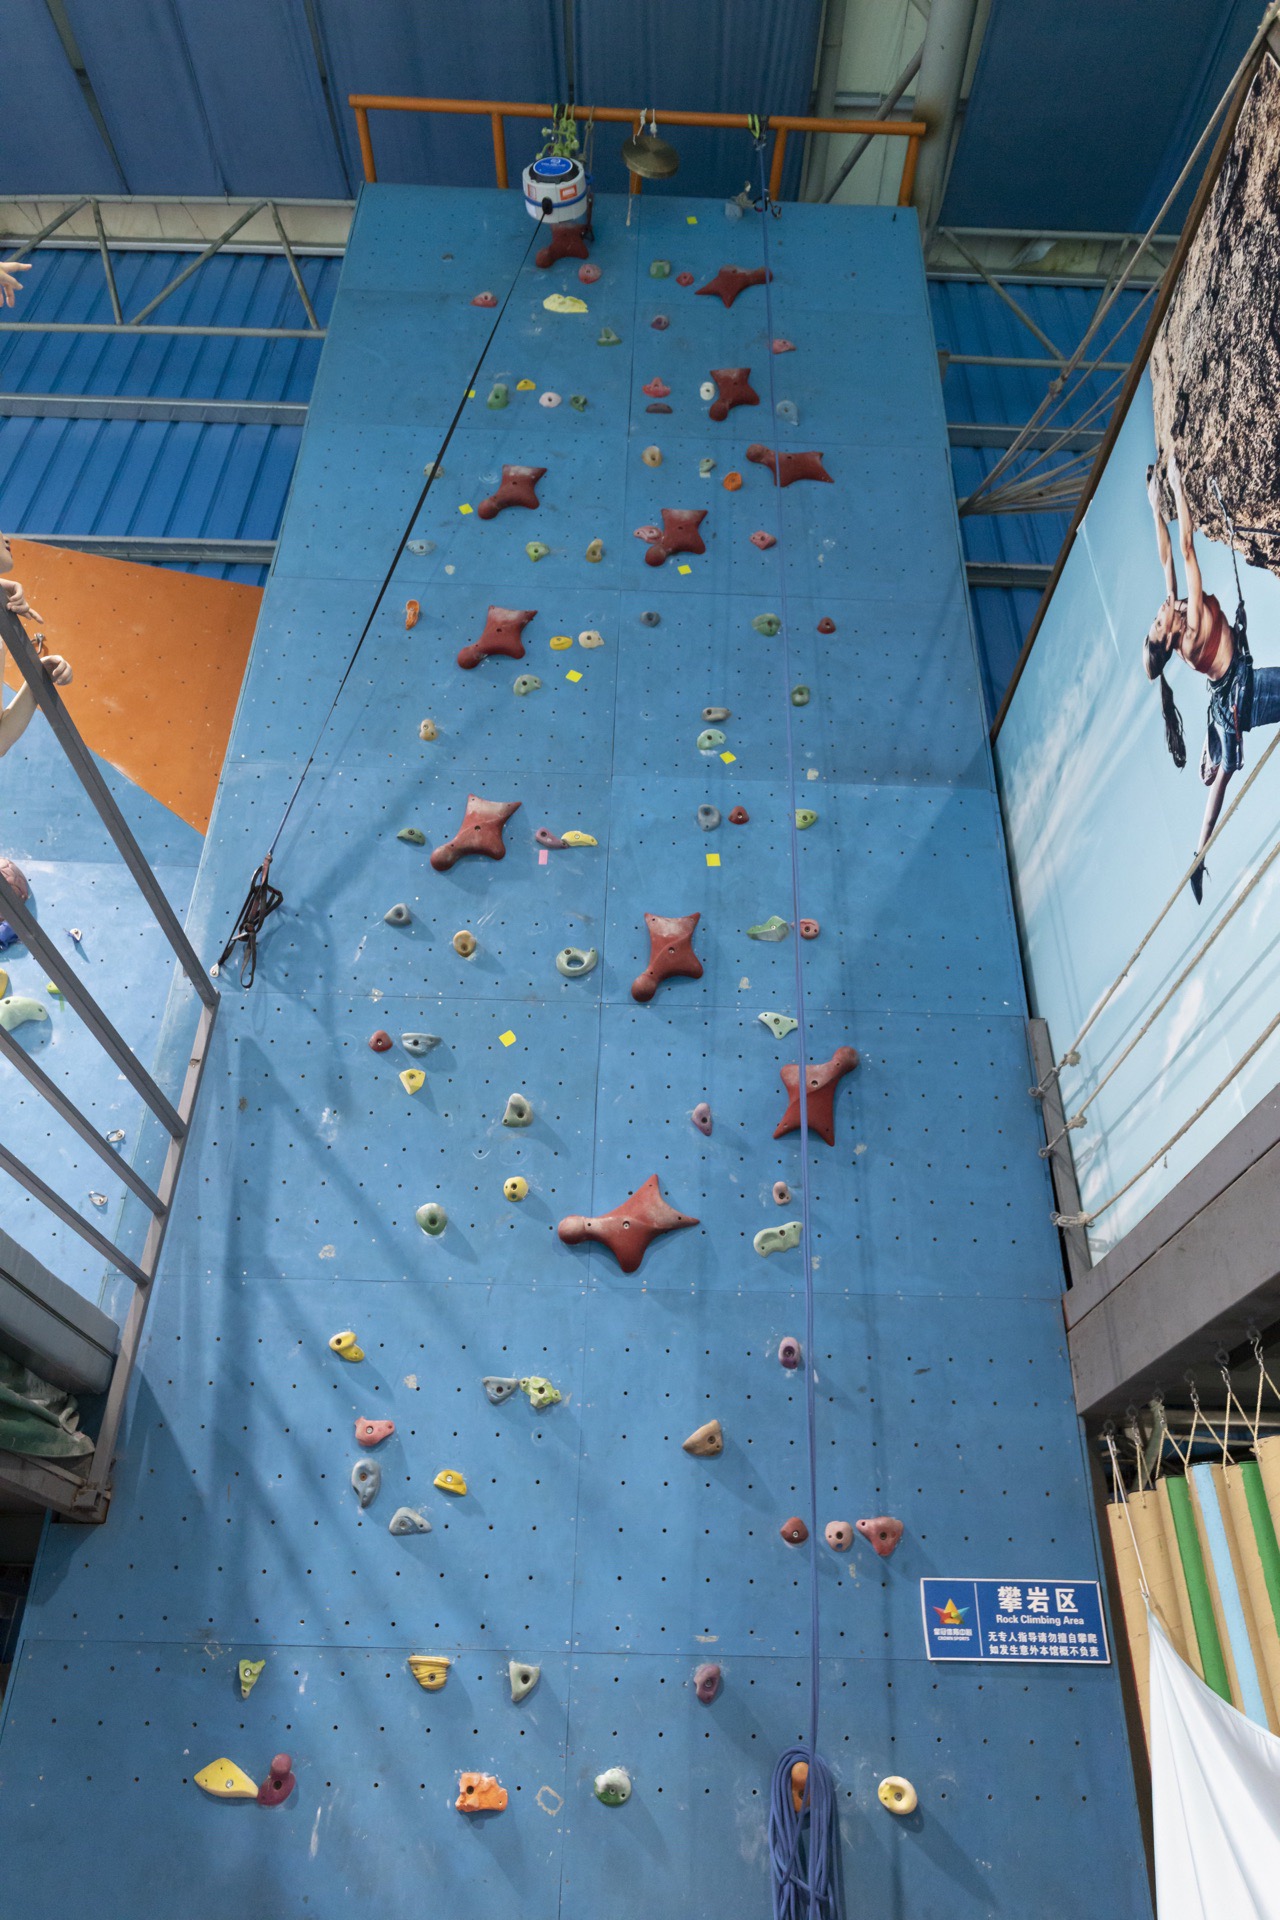 深圳丨皇冠体育中心攀岩馆 一直以为攀岩靠的是手臂的力量，没想到其实是靠腰腹力量。这里一共有两面攀岩墙